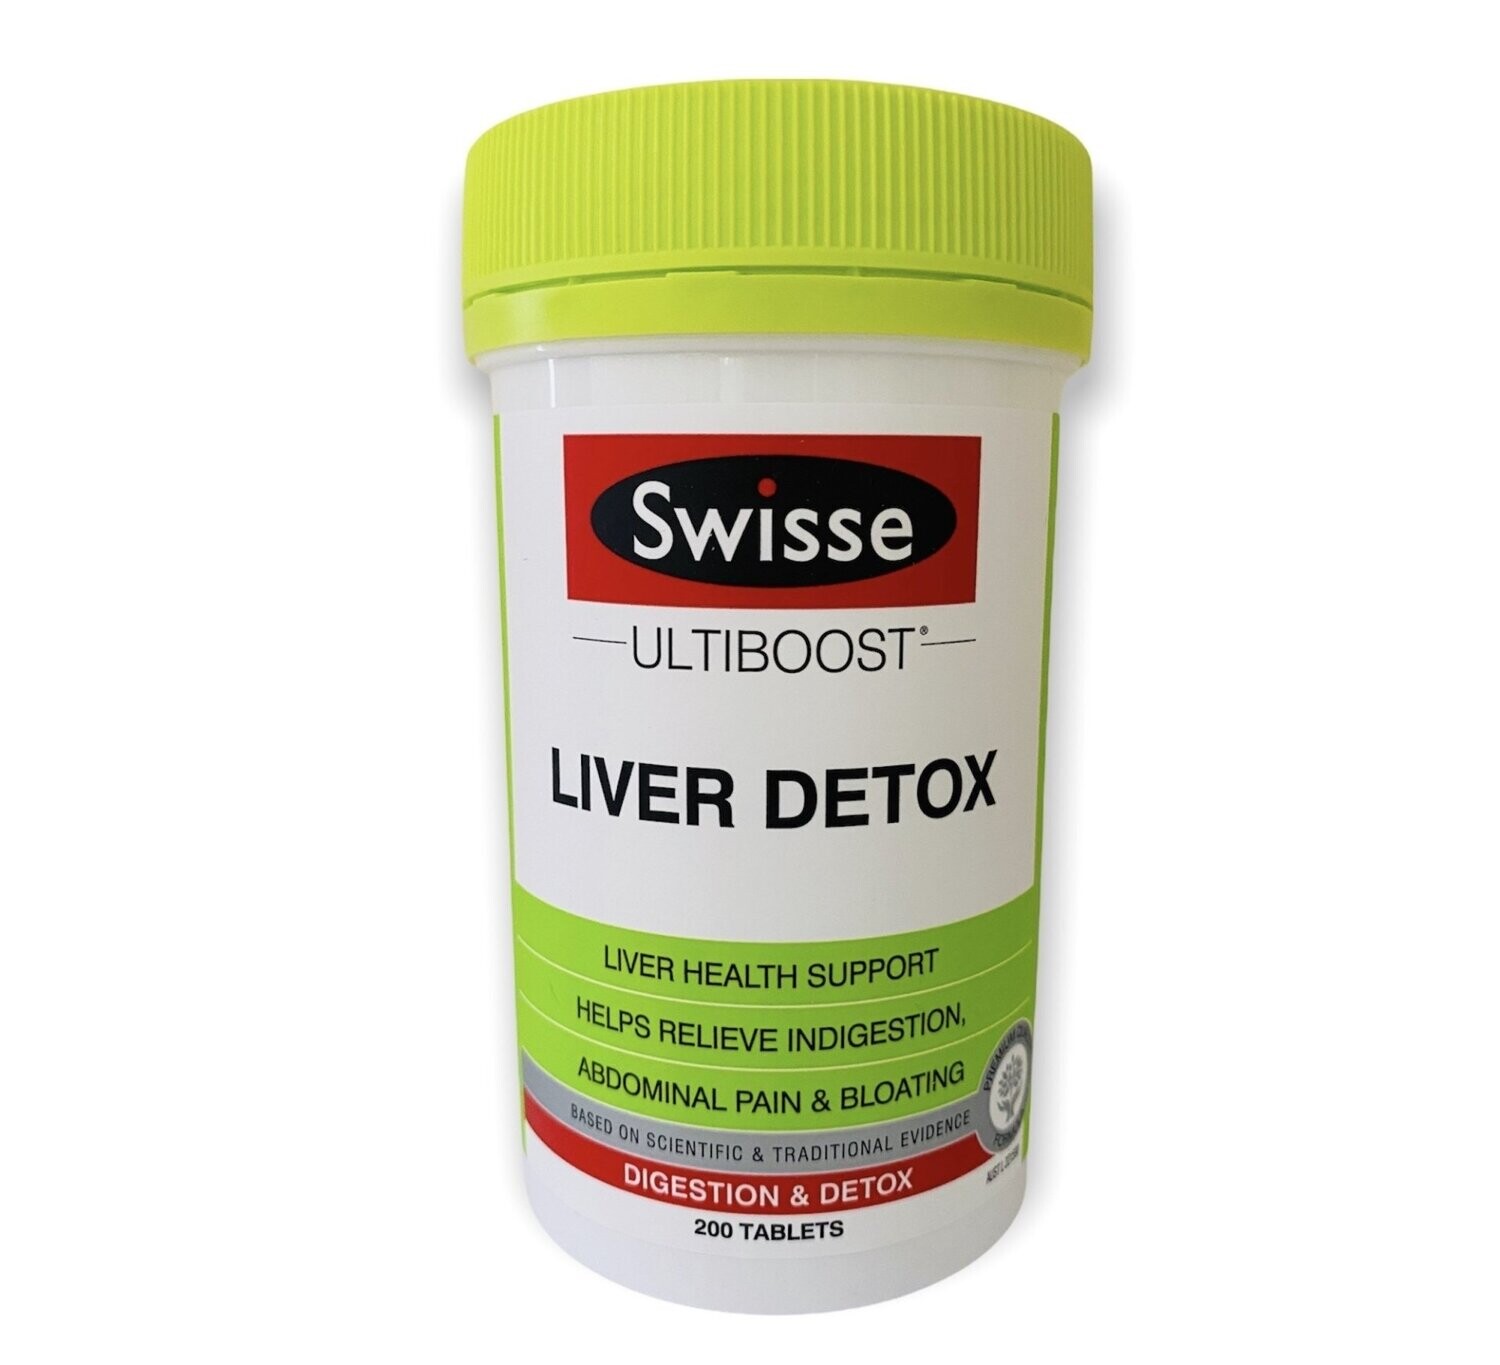 Swisse Liver Detox Ultiboost 200 Tablets